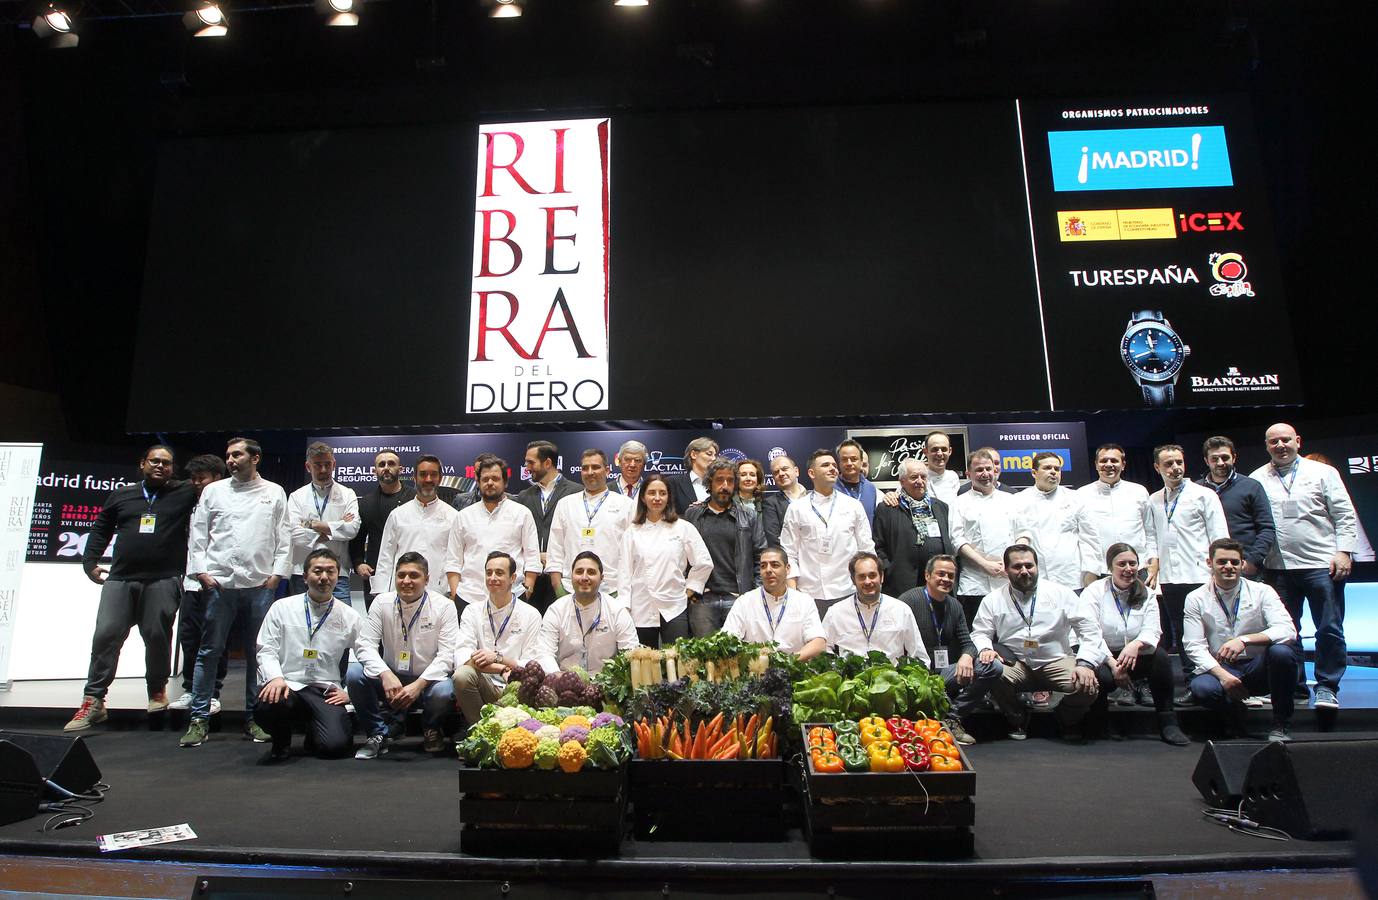 Acto de inauguración de la XVI edición de la Cumbre Internacional Madrid Fusión. En la imagen, algunos de los cocineros que participan.